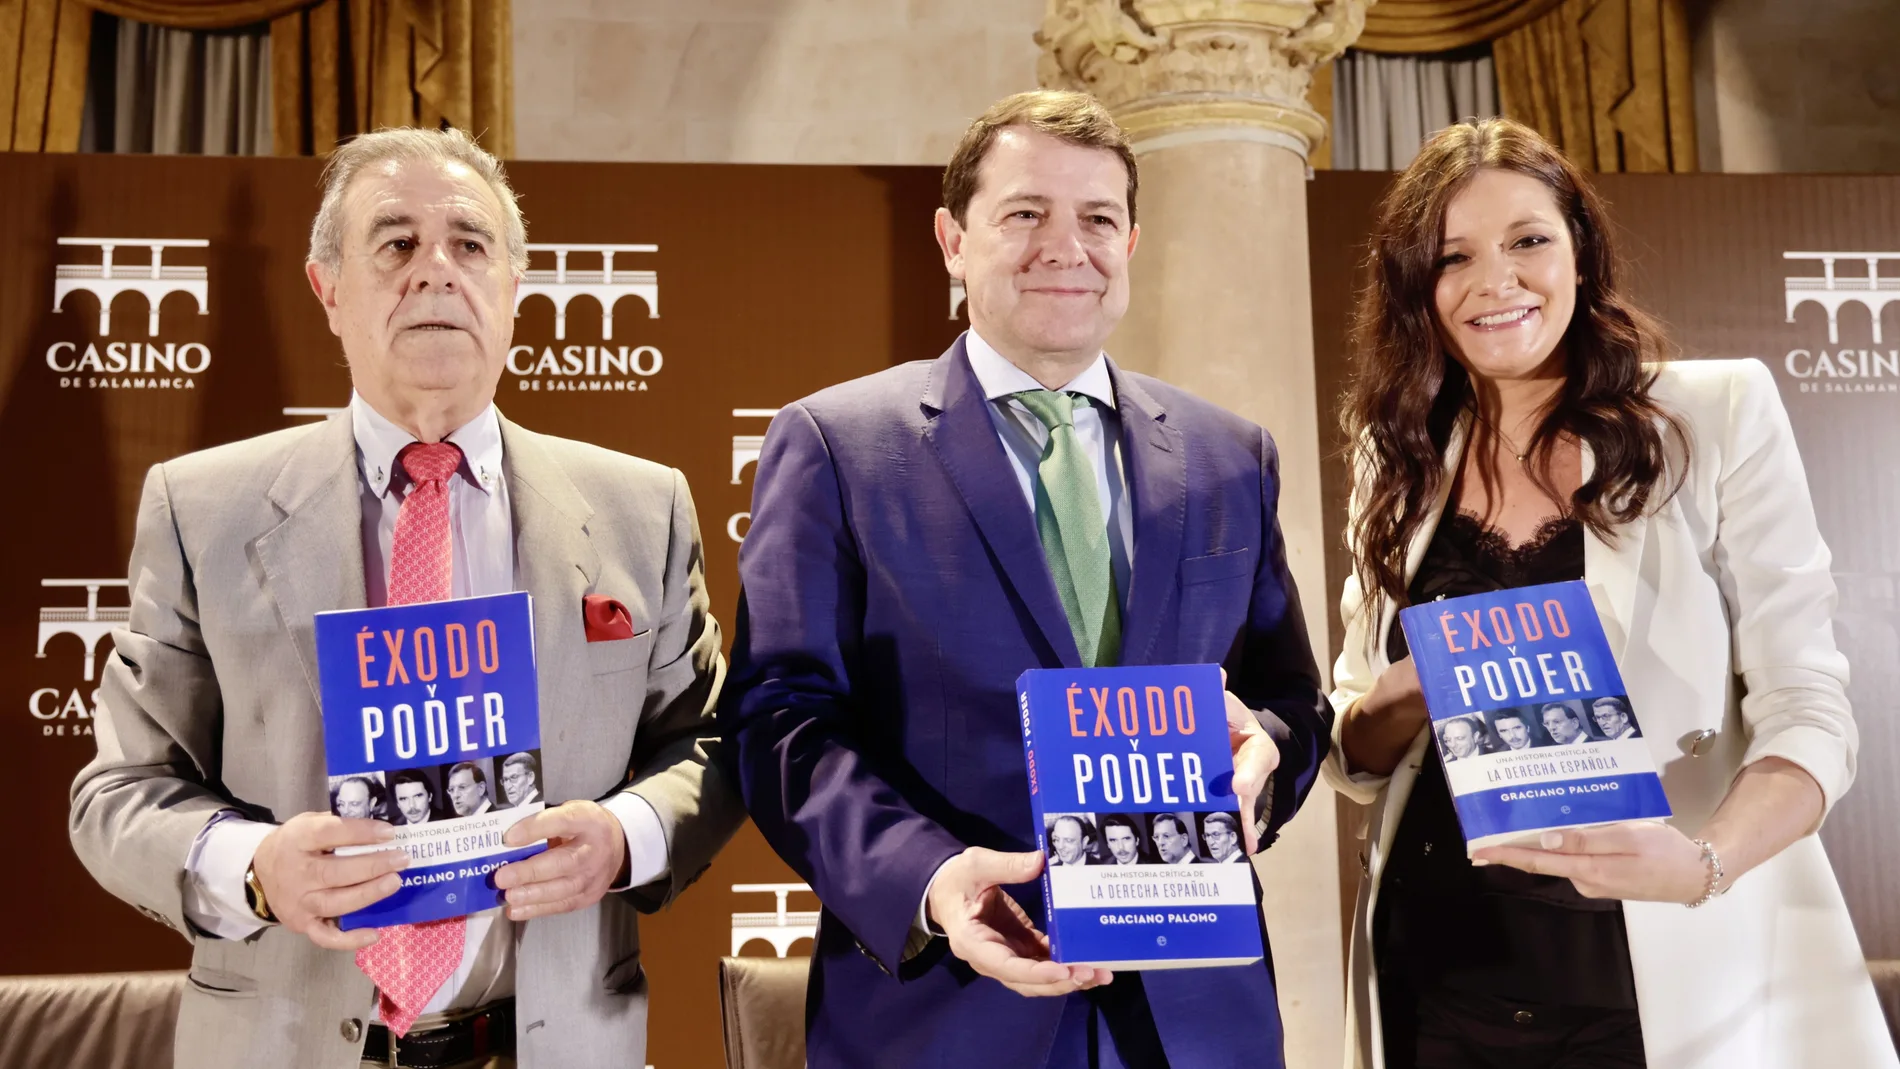 Mañueco junto a Graciano Palomo en la presentación de su libro "Éxodo y poder"